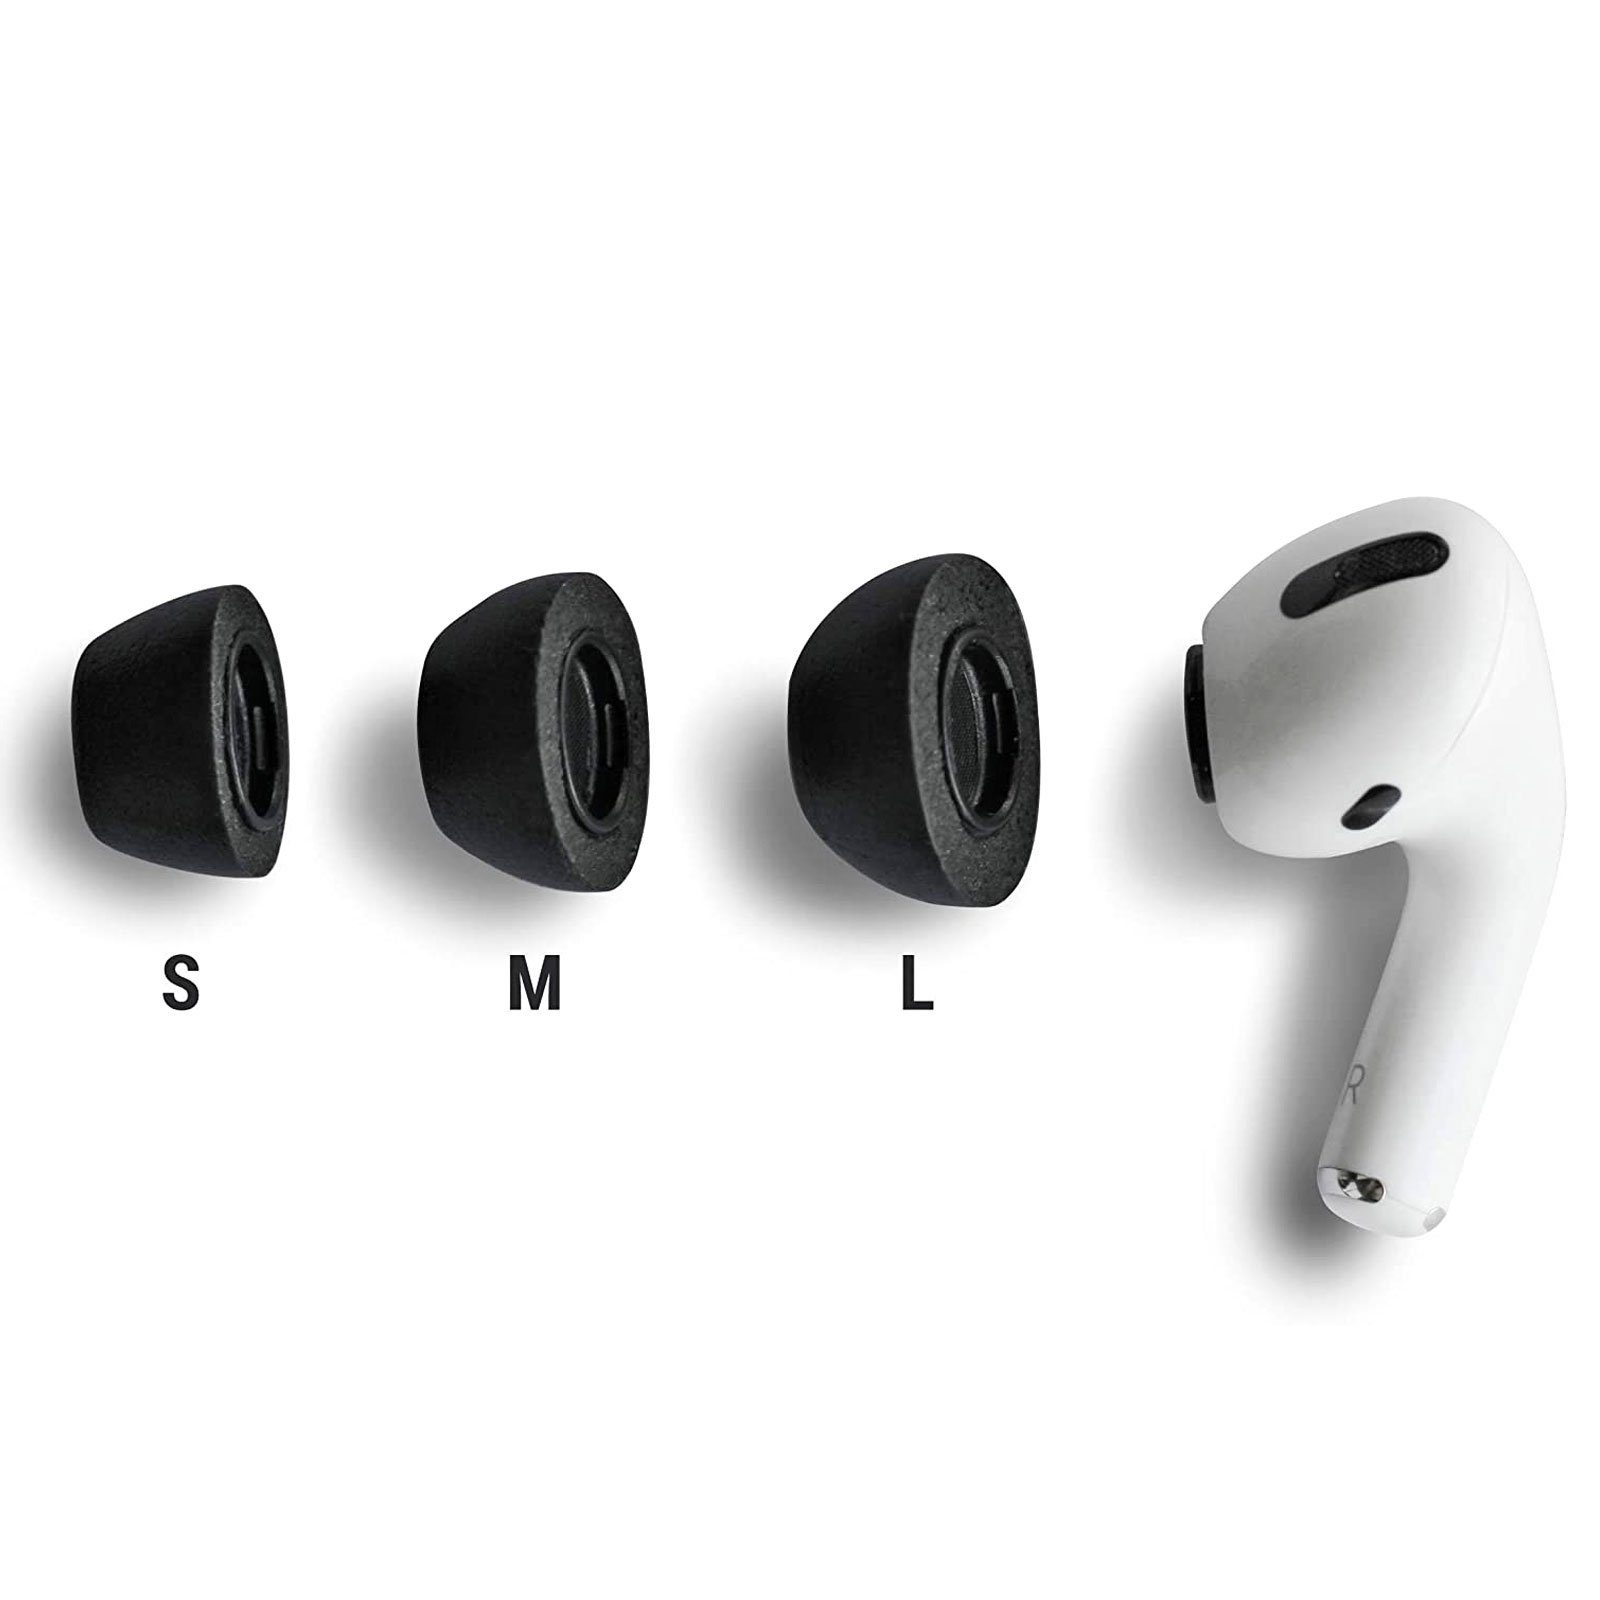 Schwarz 2.0 AirPods Pro Sicherer In-Ear-Kopfhörer für (Größe Sitz, Tragekomfort) Comply L, Ohrstöpsel Hoher